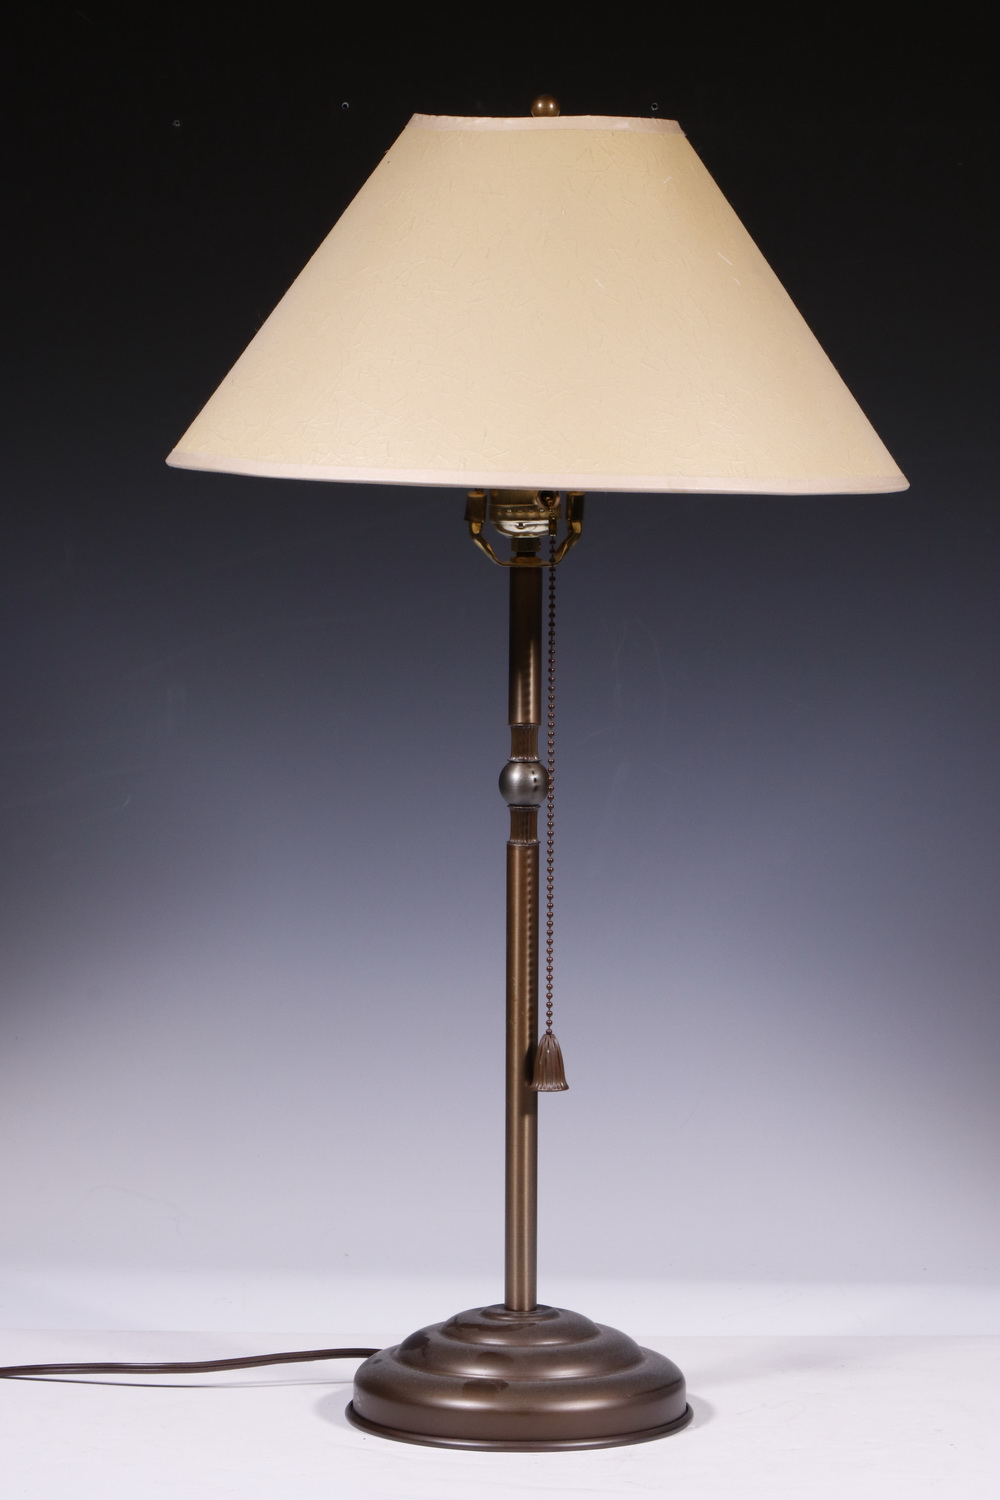 METAL TABLE LAMP Metal table lamp